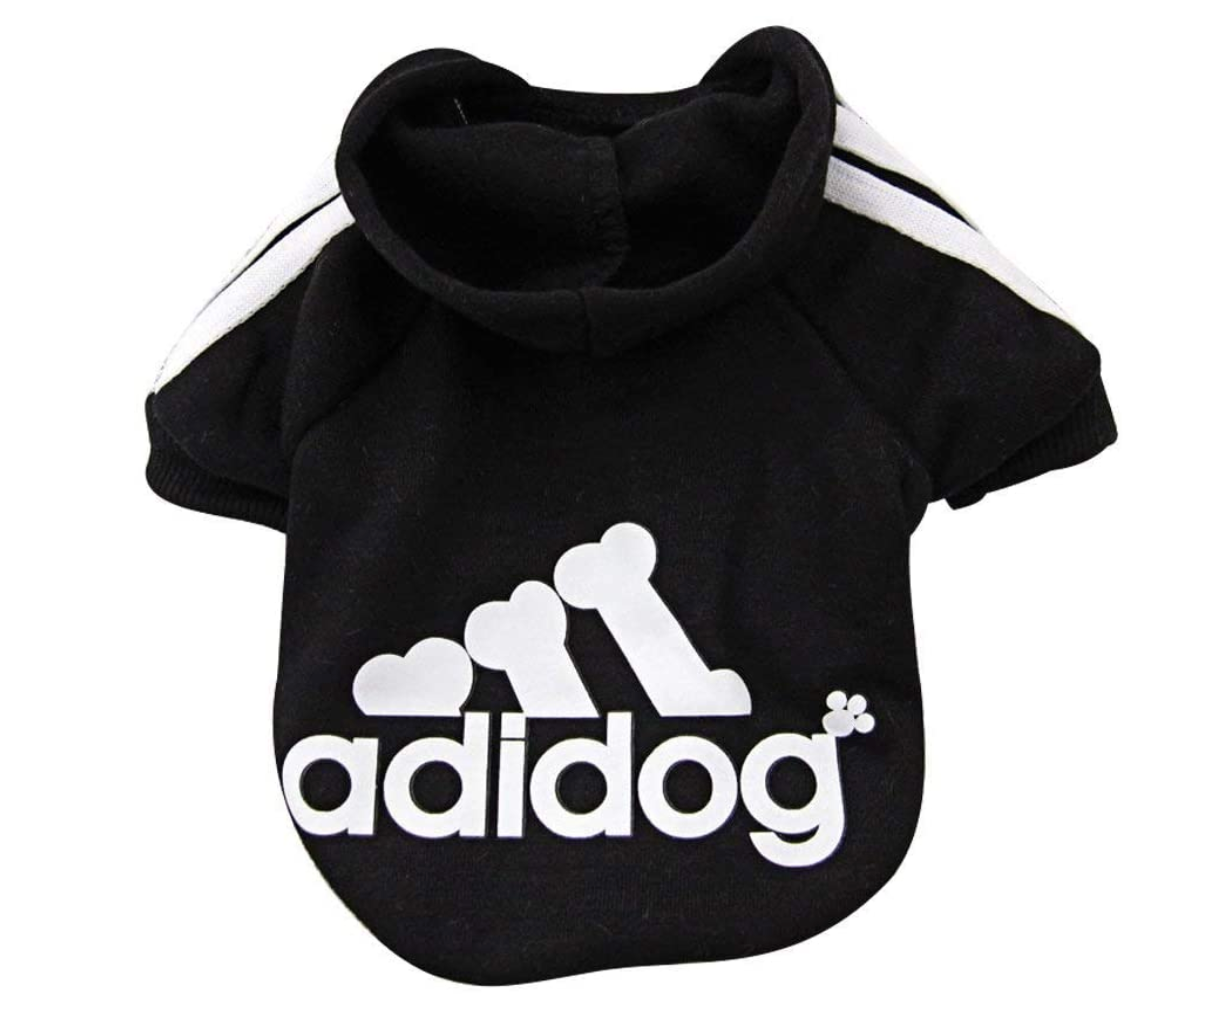 The Basic Adidog - Black